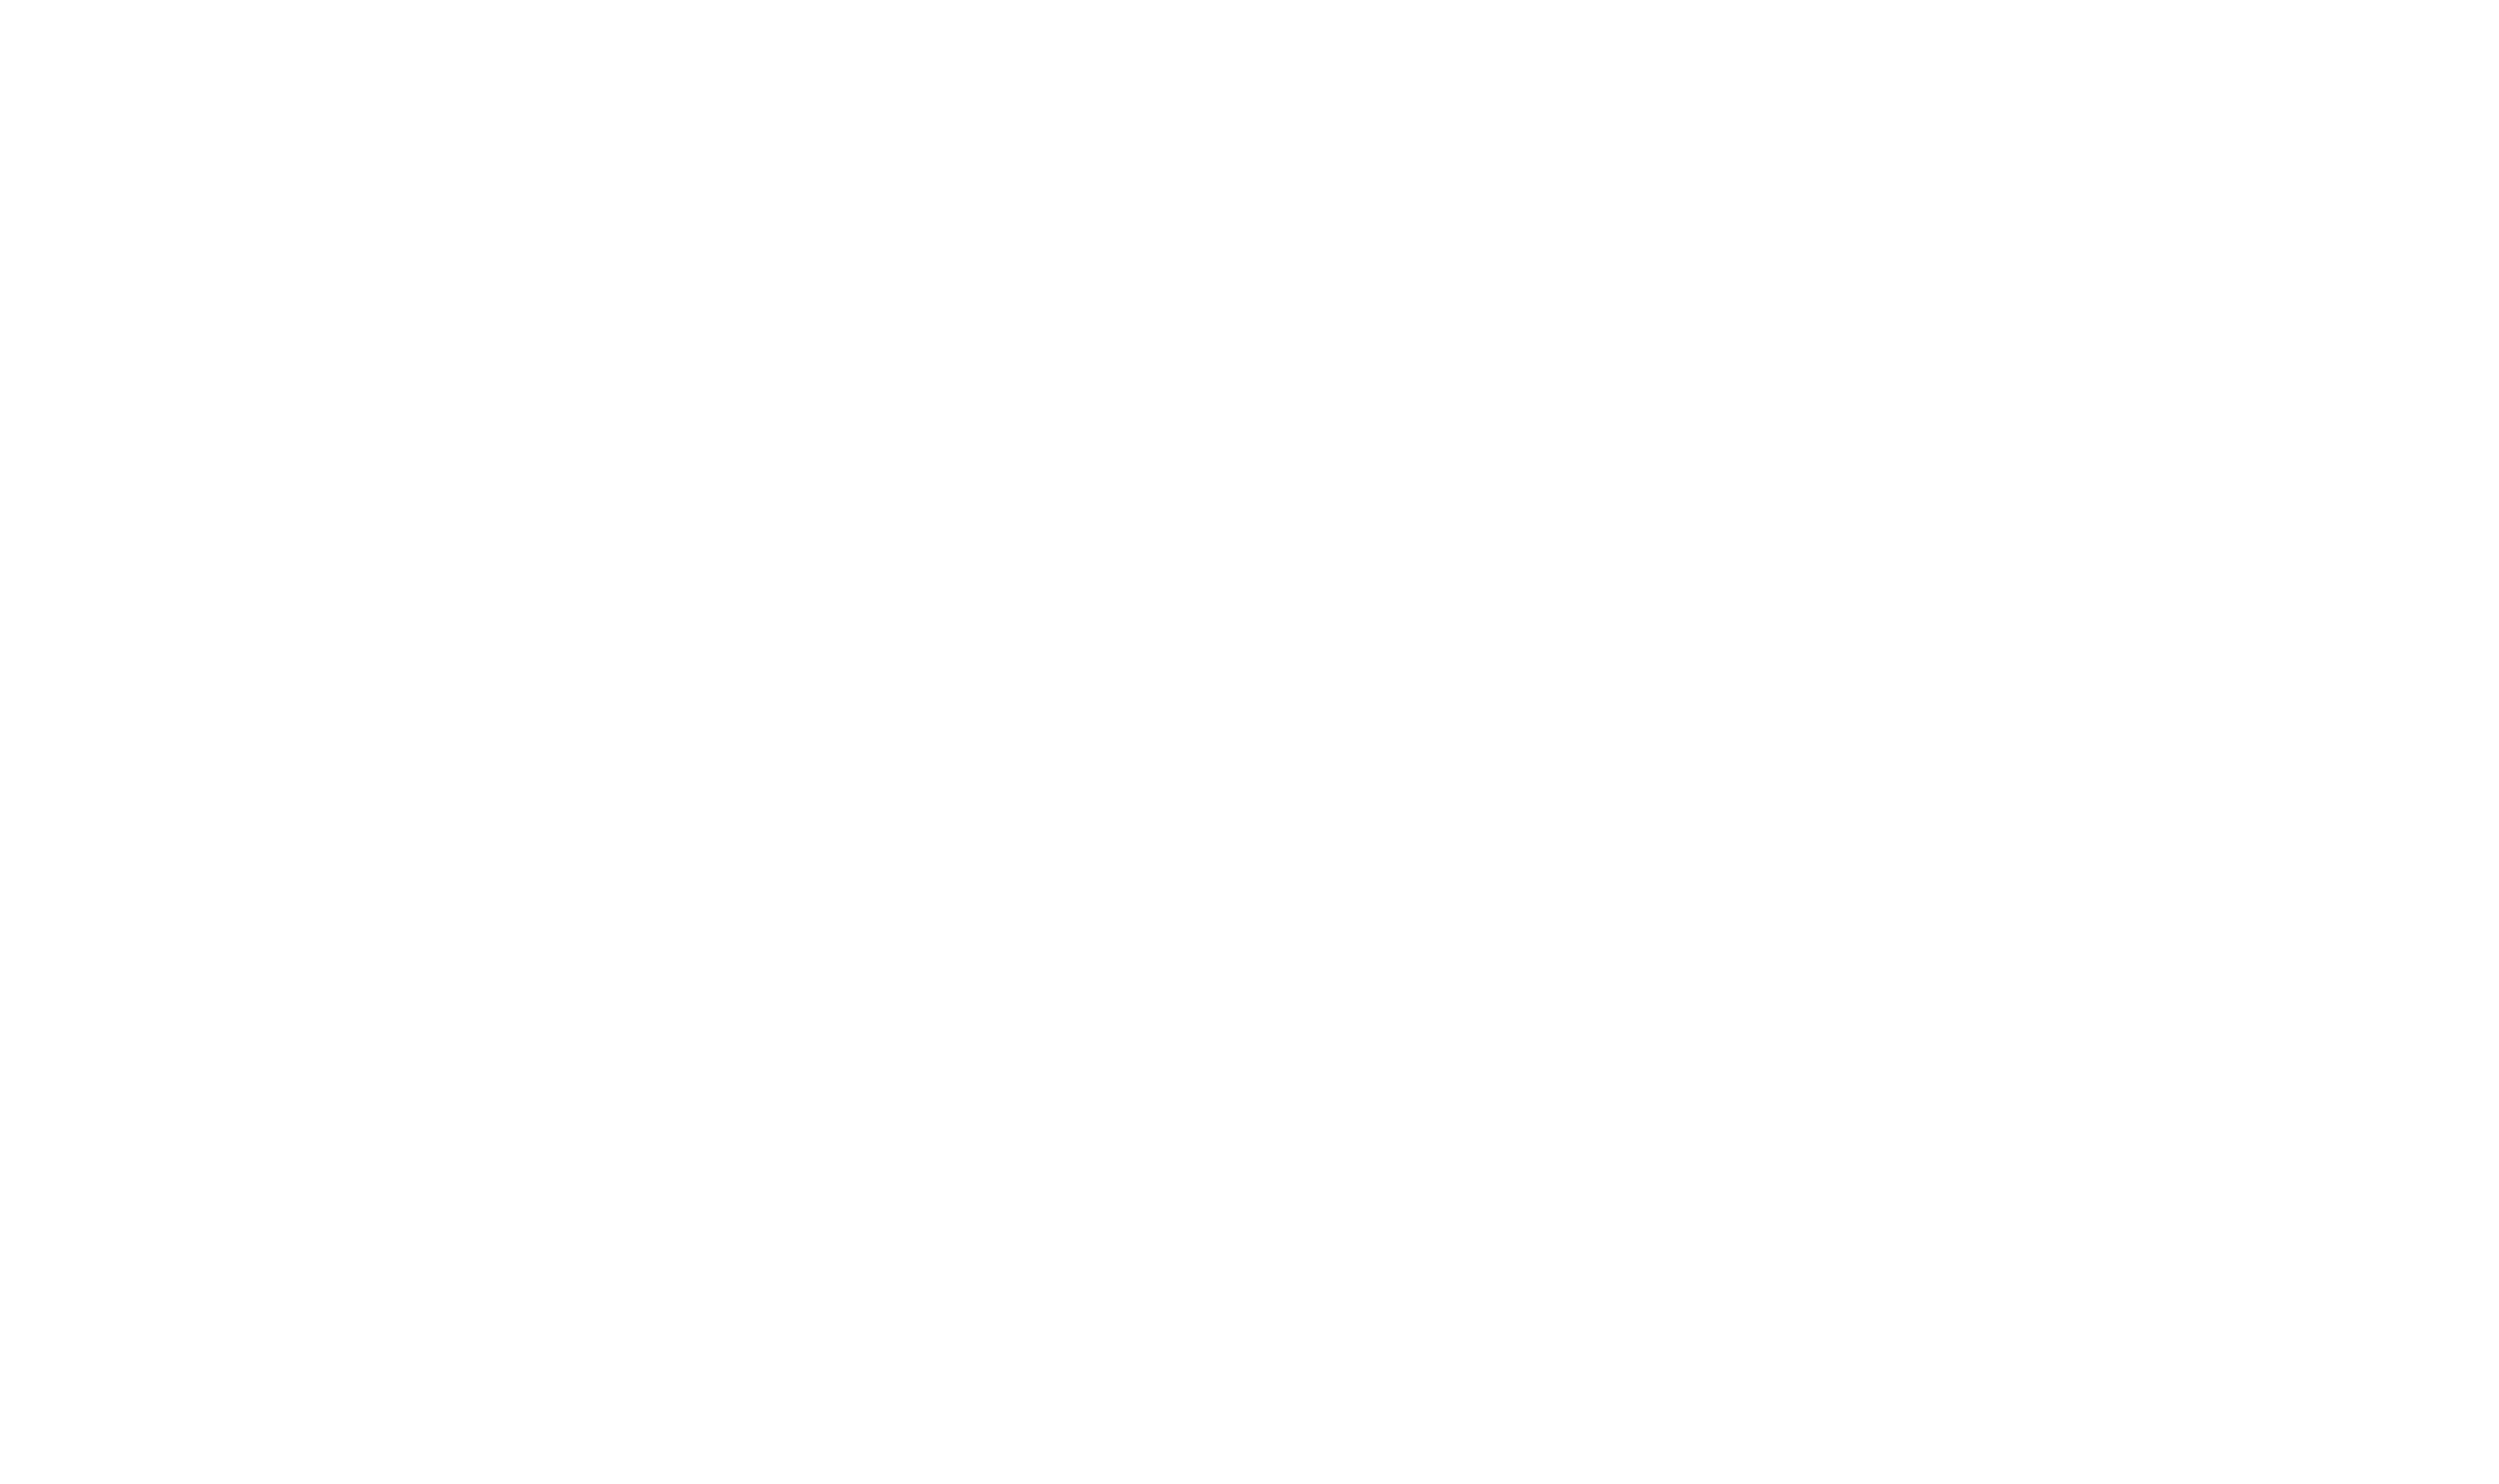 ShOtt's?